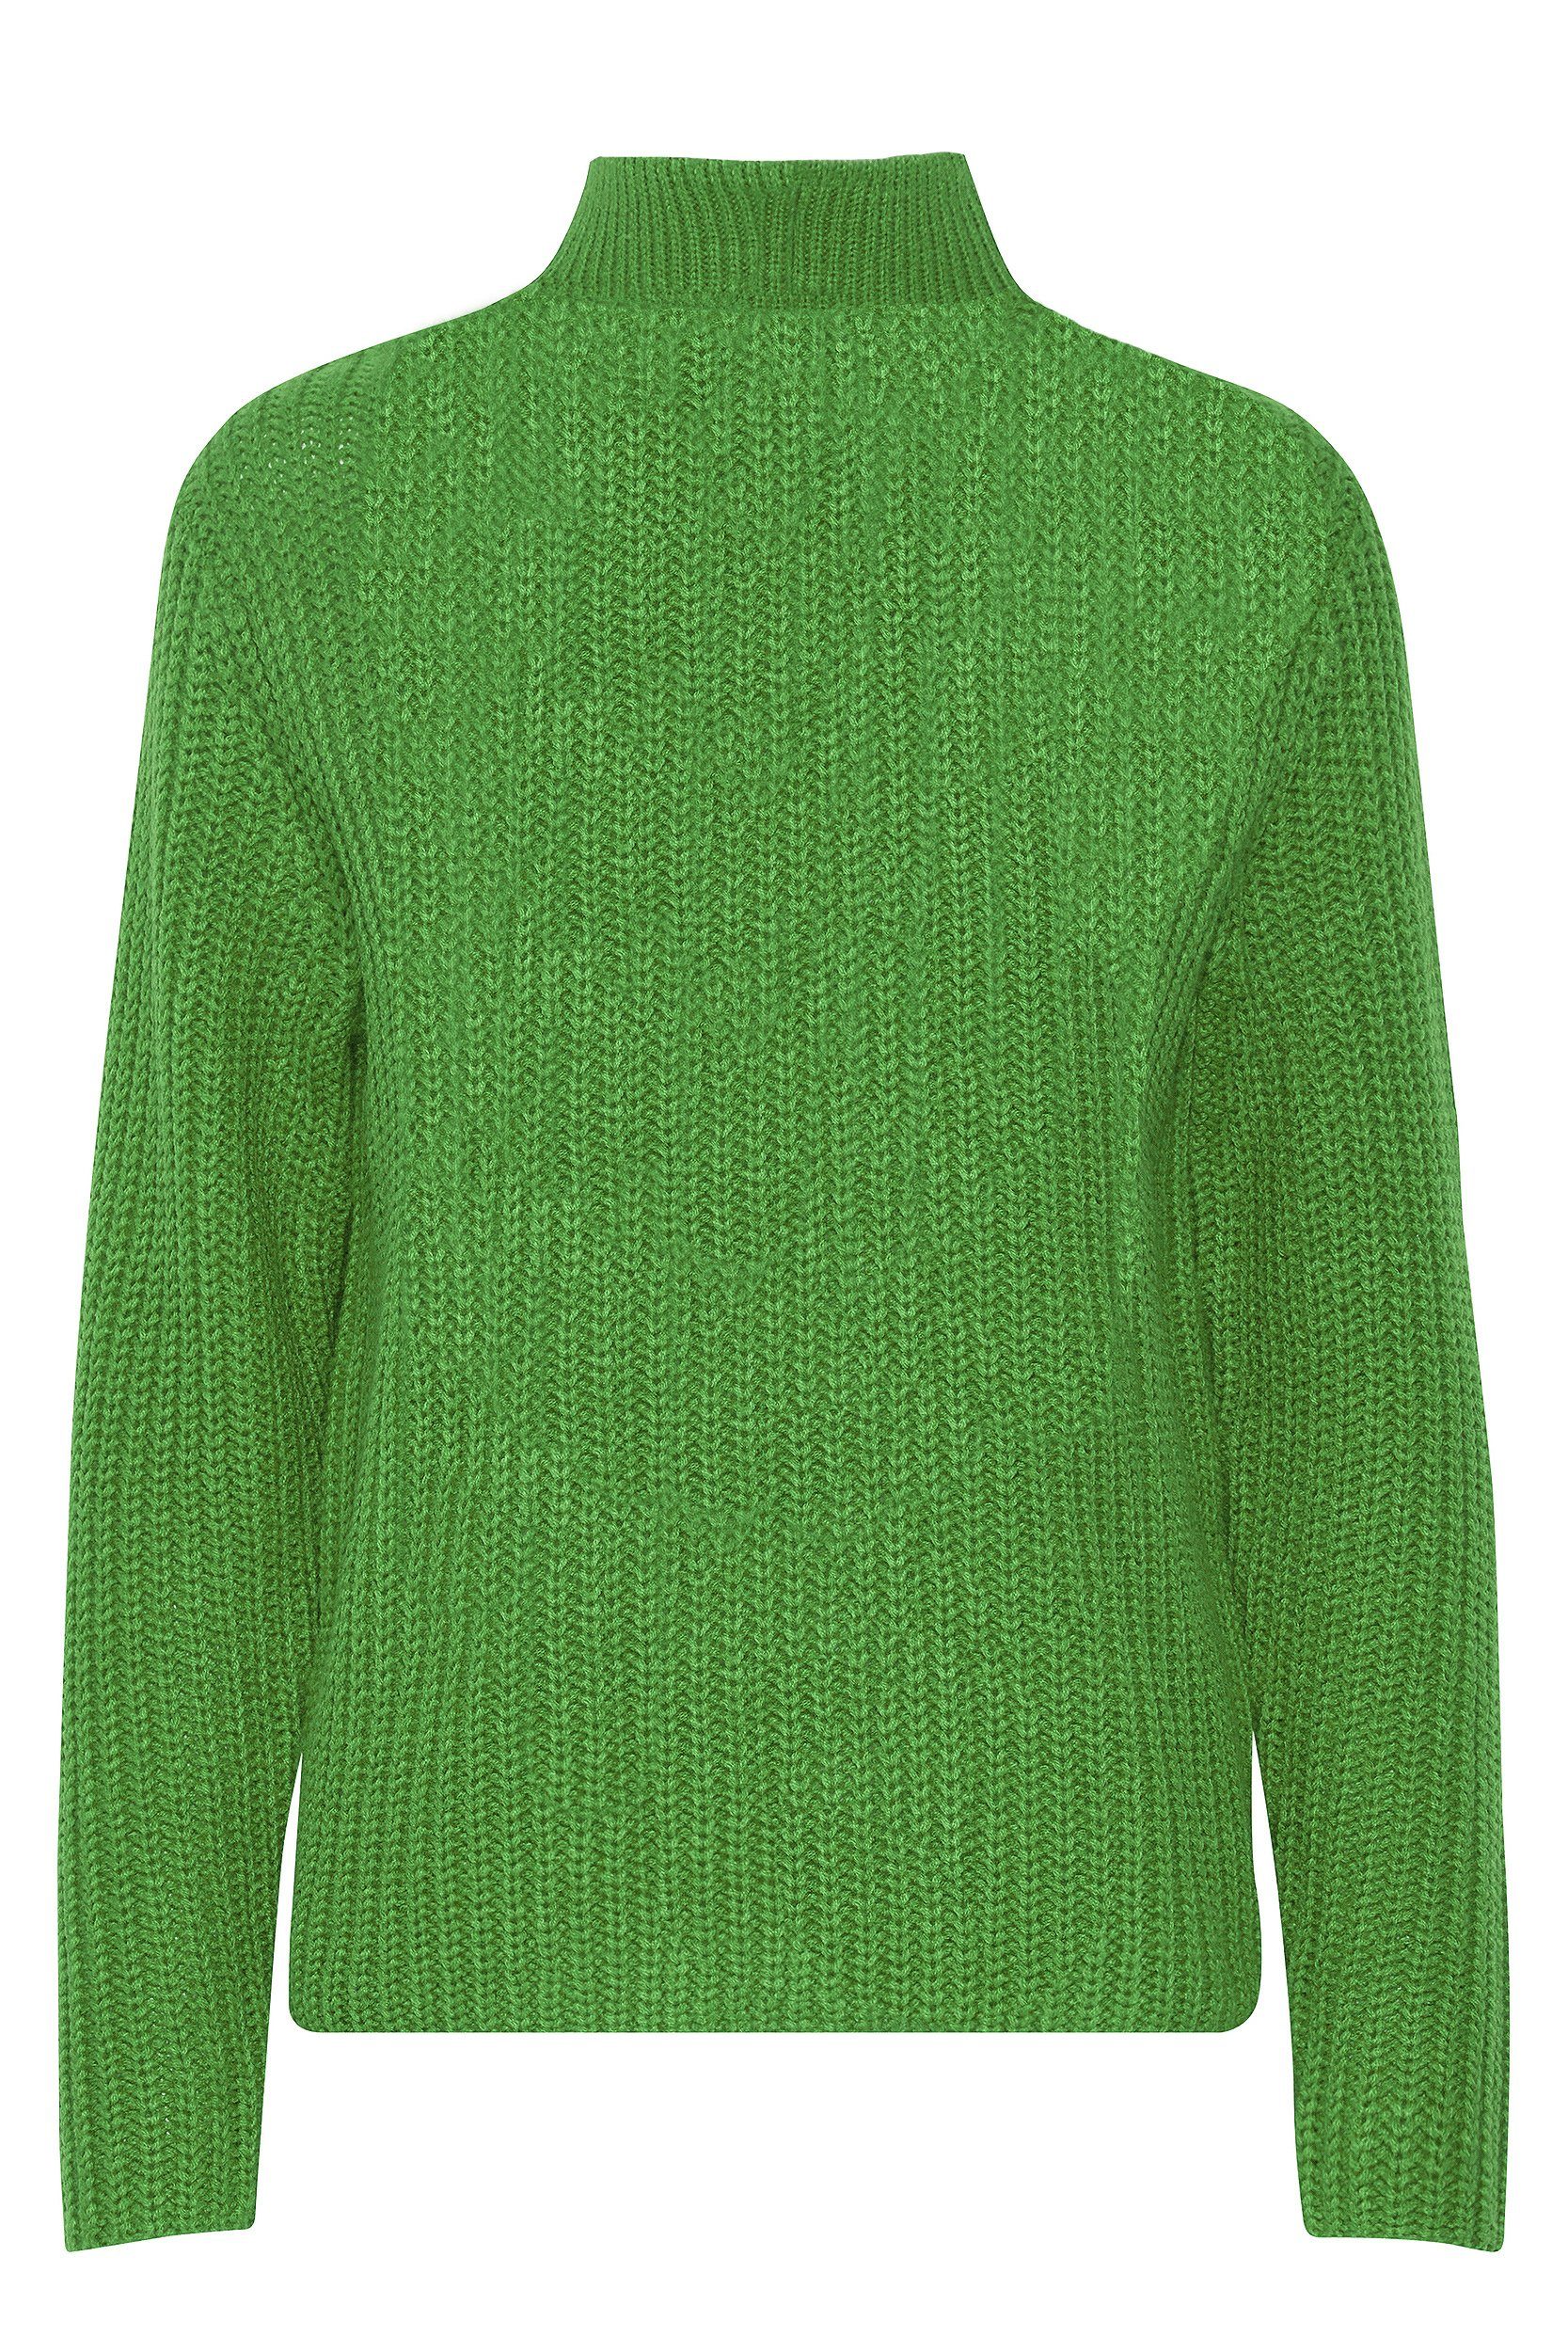 Grobstrick Grün Sweater 6677 Strickpullover Troyer in Reißverschluss mit b.young Kragen Pullover